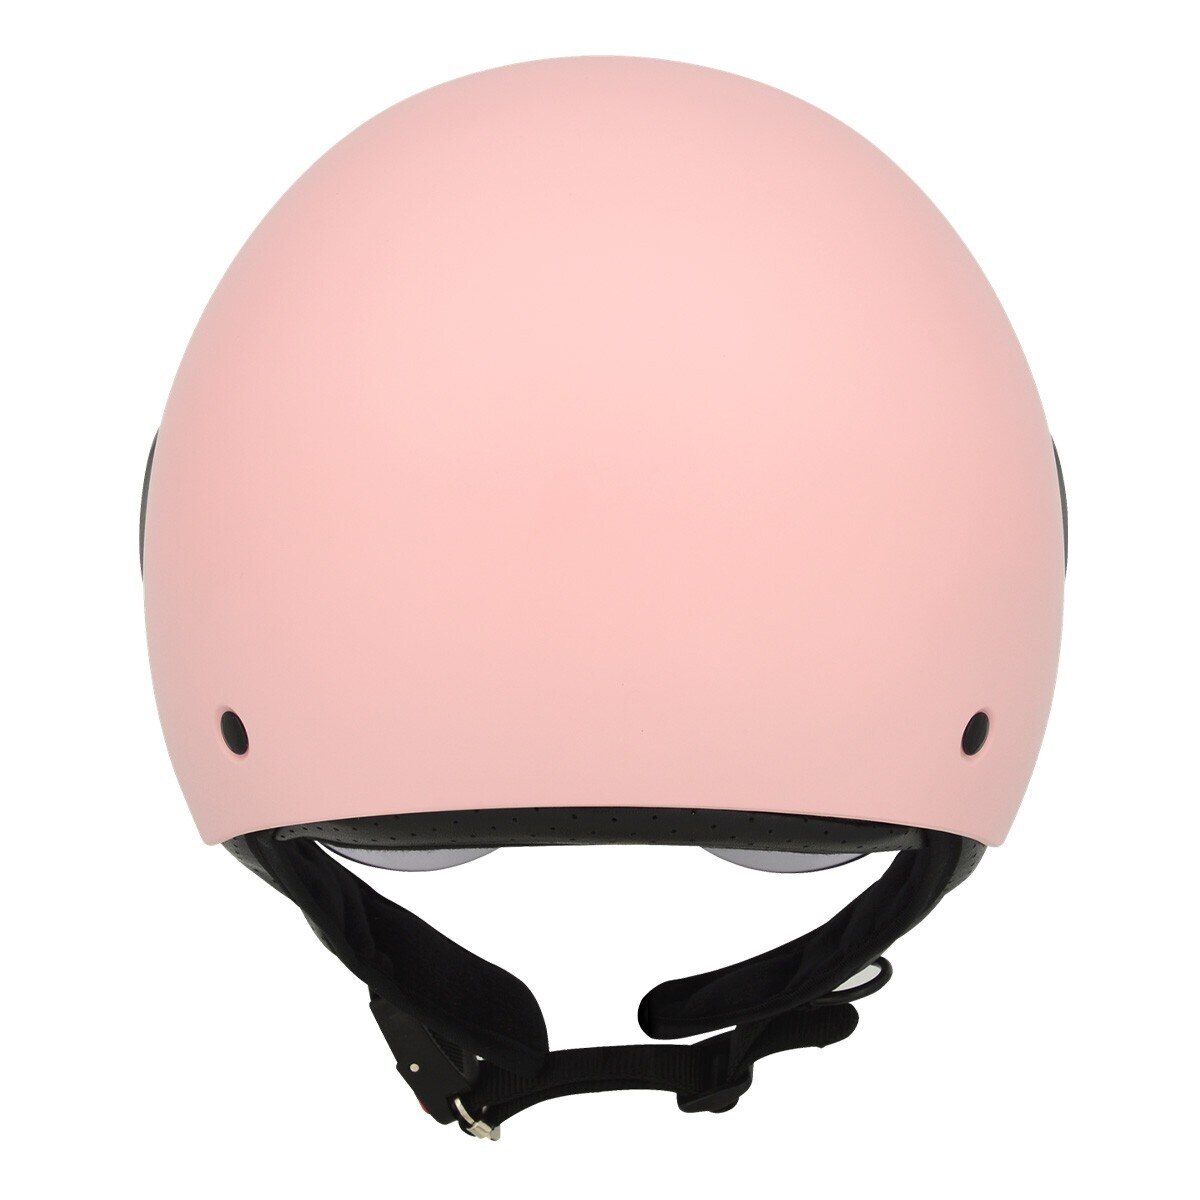 M2R 機車半露臉式防護頭盔 M505 L 消光粉紅